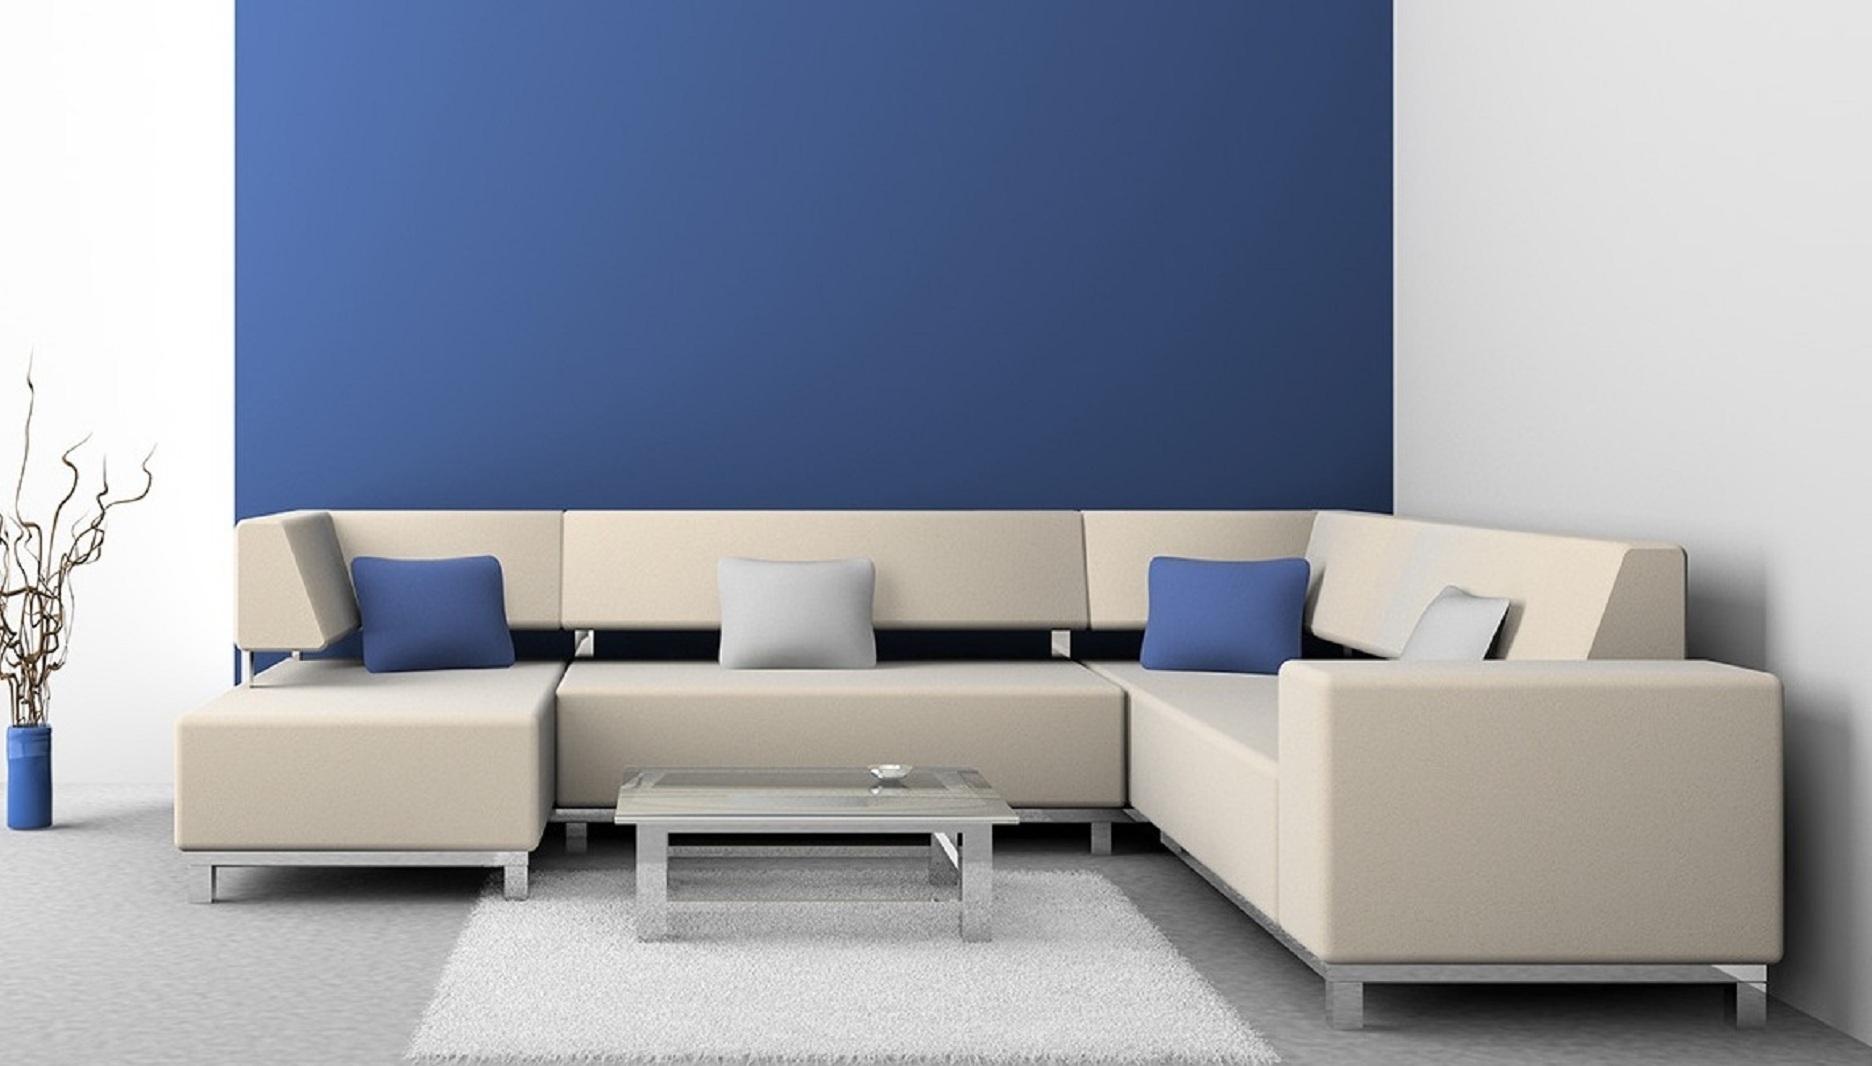 Harga Sofa Minimalis Untuk Ruang Tamu Kecil Desain Rumah Minimalis